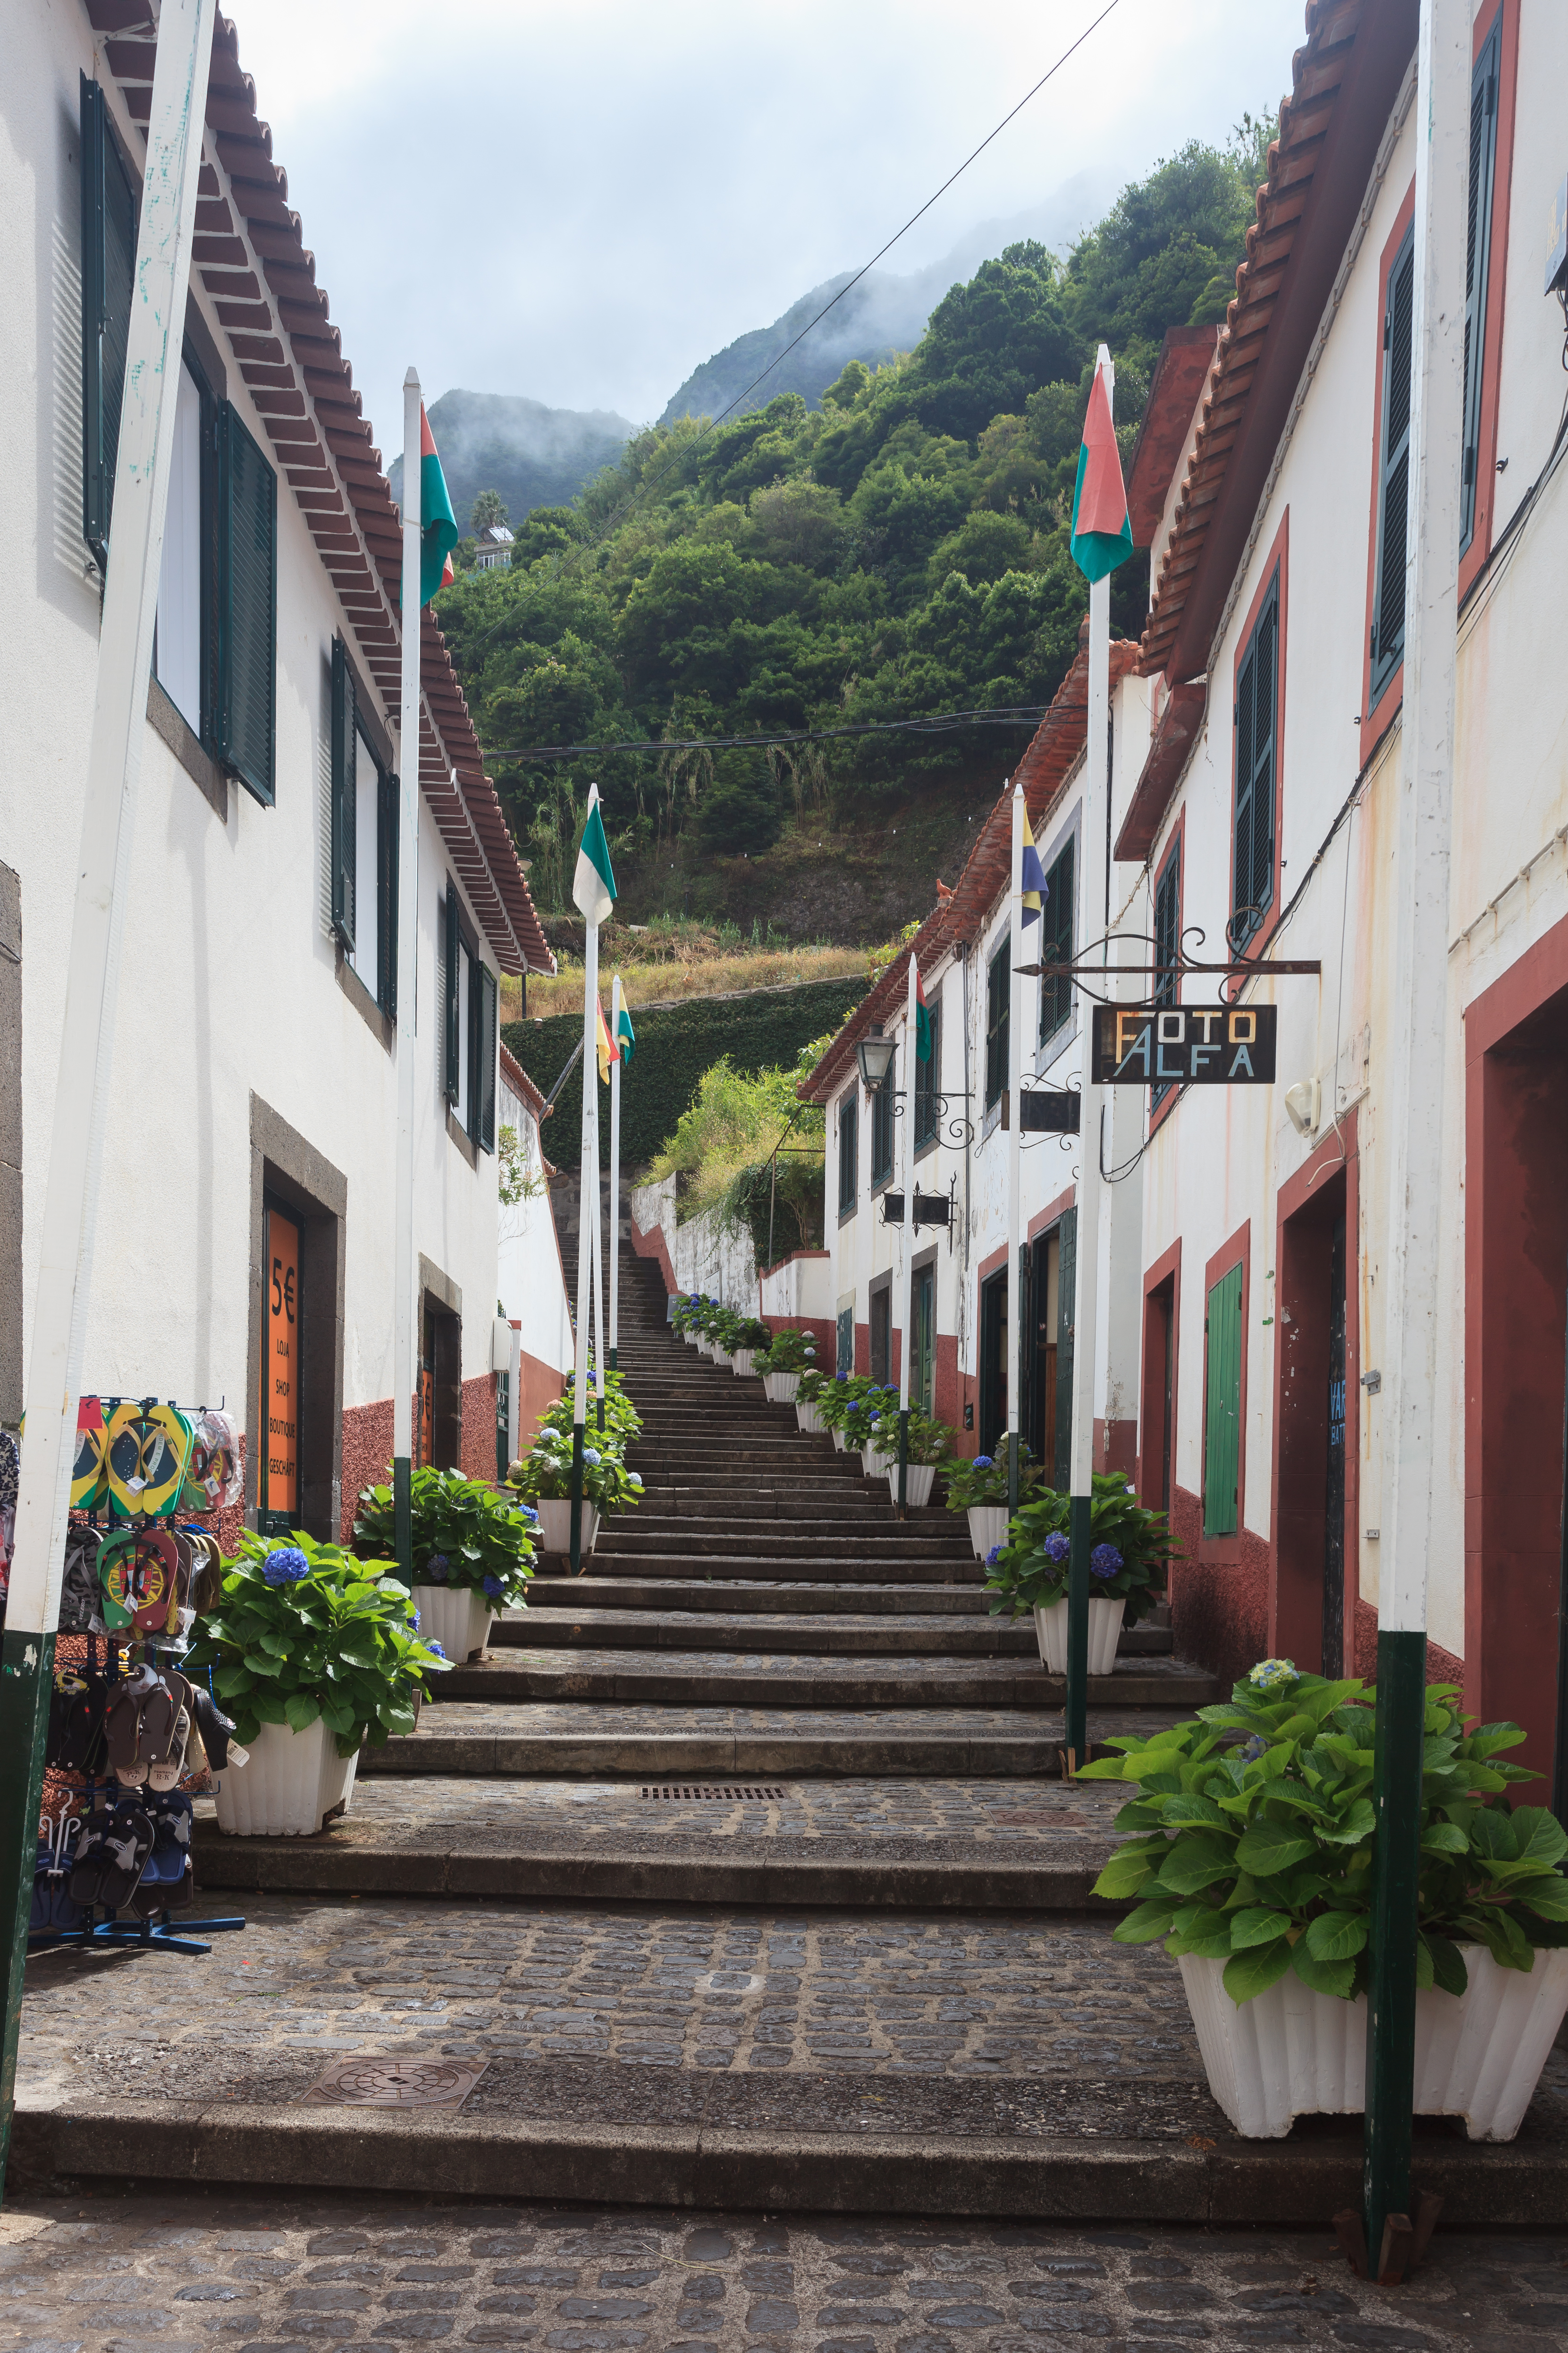 2016. Rúa de Sao Vicente. Madeira. Portugal